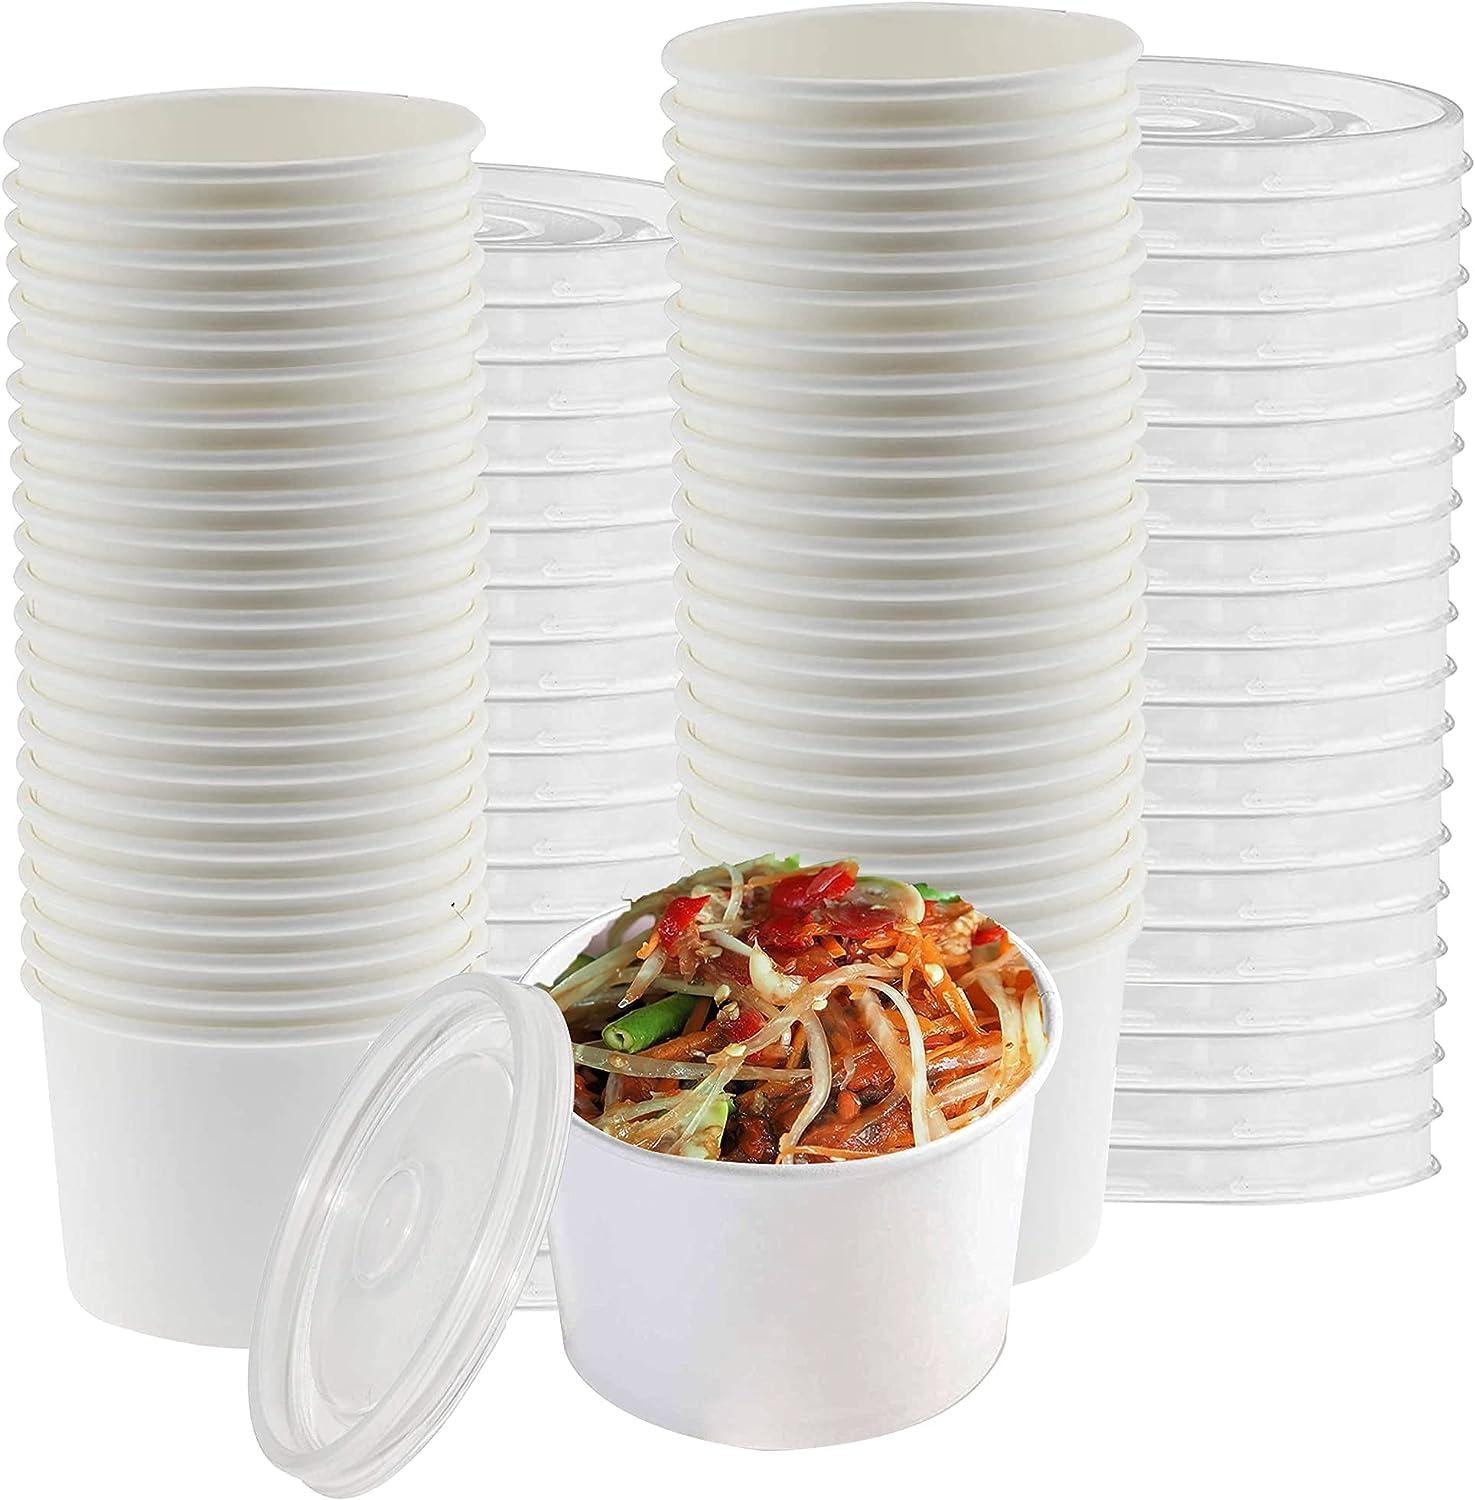 16oz Disposable Paper Soup Bowl Hot Soup Cup With Lids